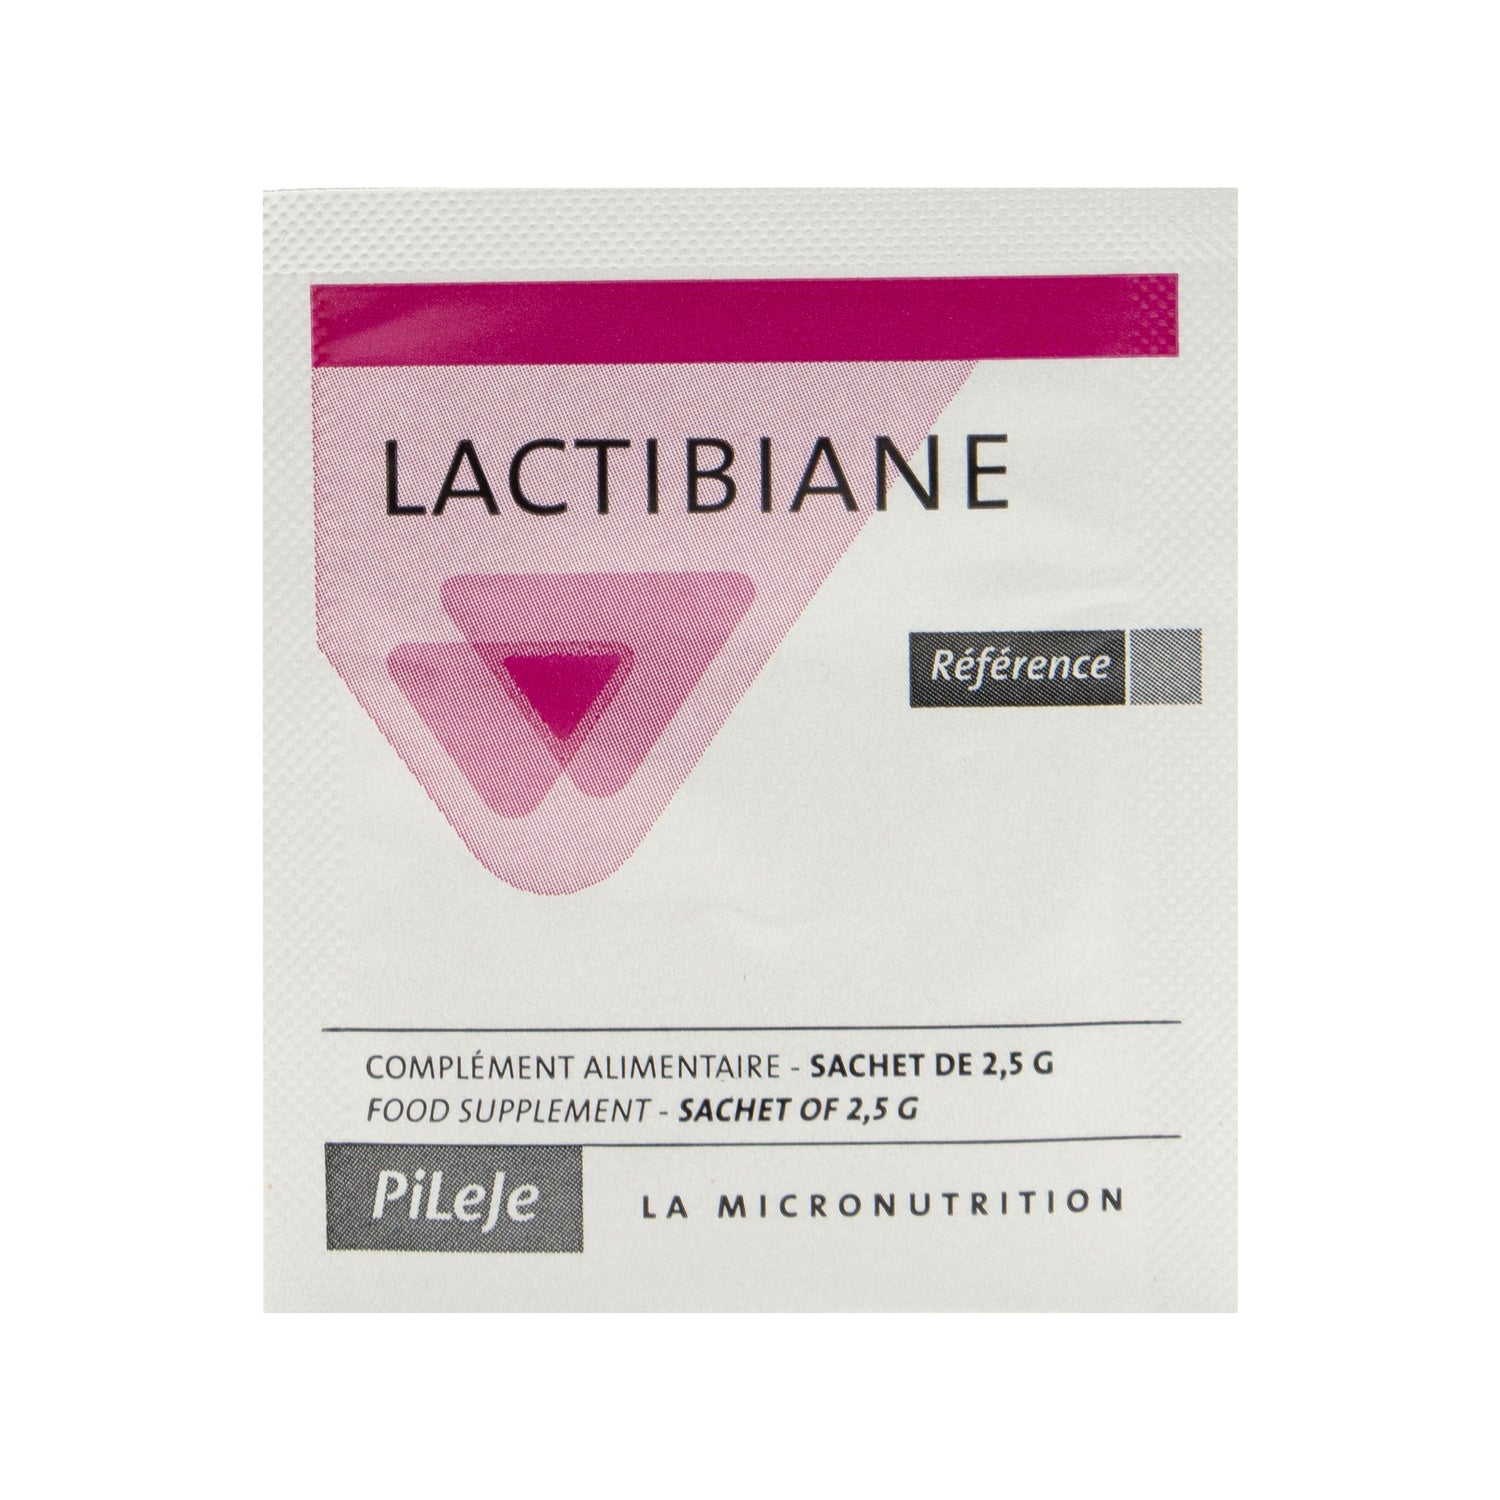 Lactibiane Tolerance 2.5 Gr 30 Envelopes 【ONLINE BUY】